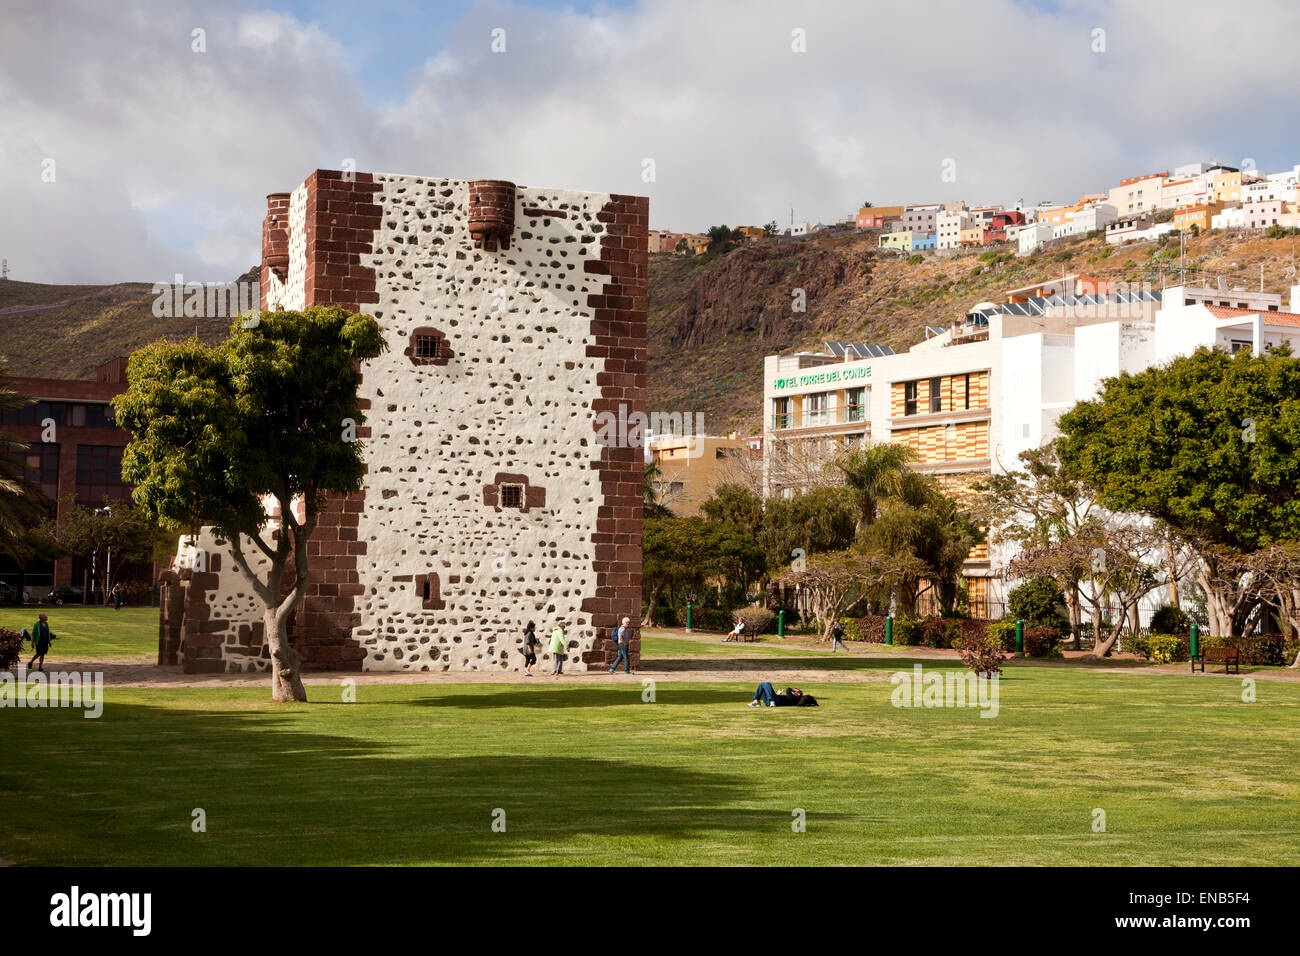 La Torre del Conde presso la capitale dell'isola di San Sebastian de La Gomera, La Gomera, isole Canarie, Spagna, Europa Foto Stock